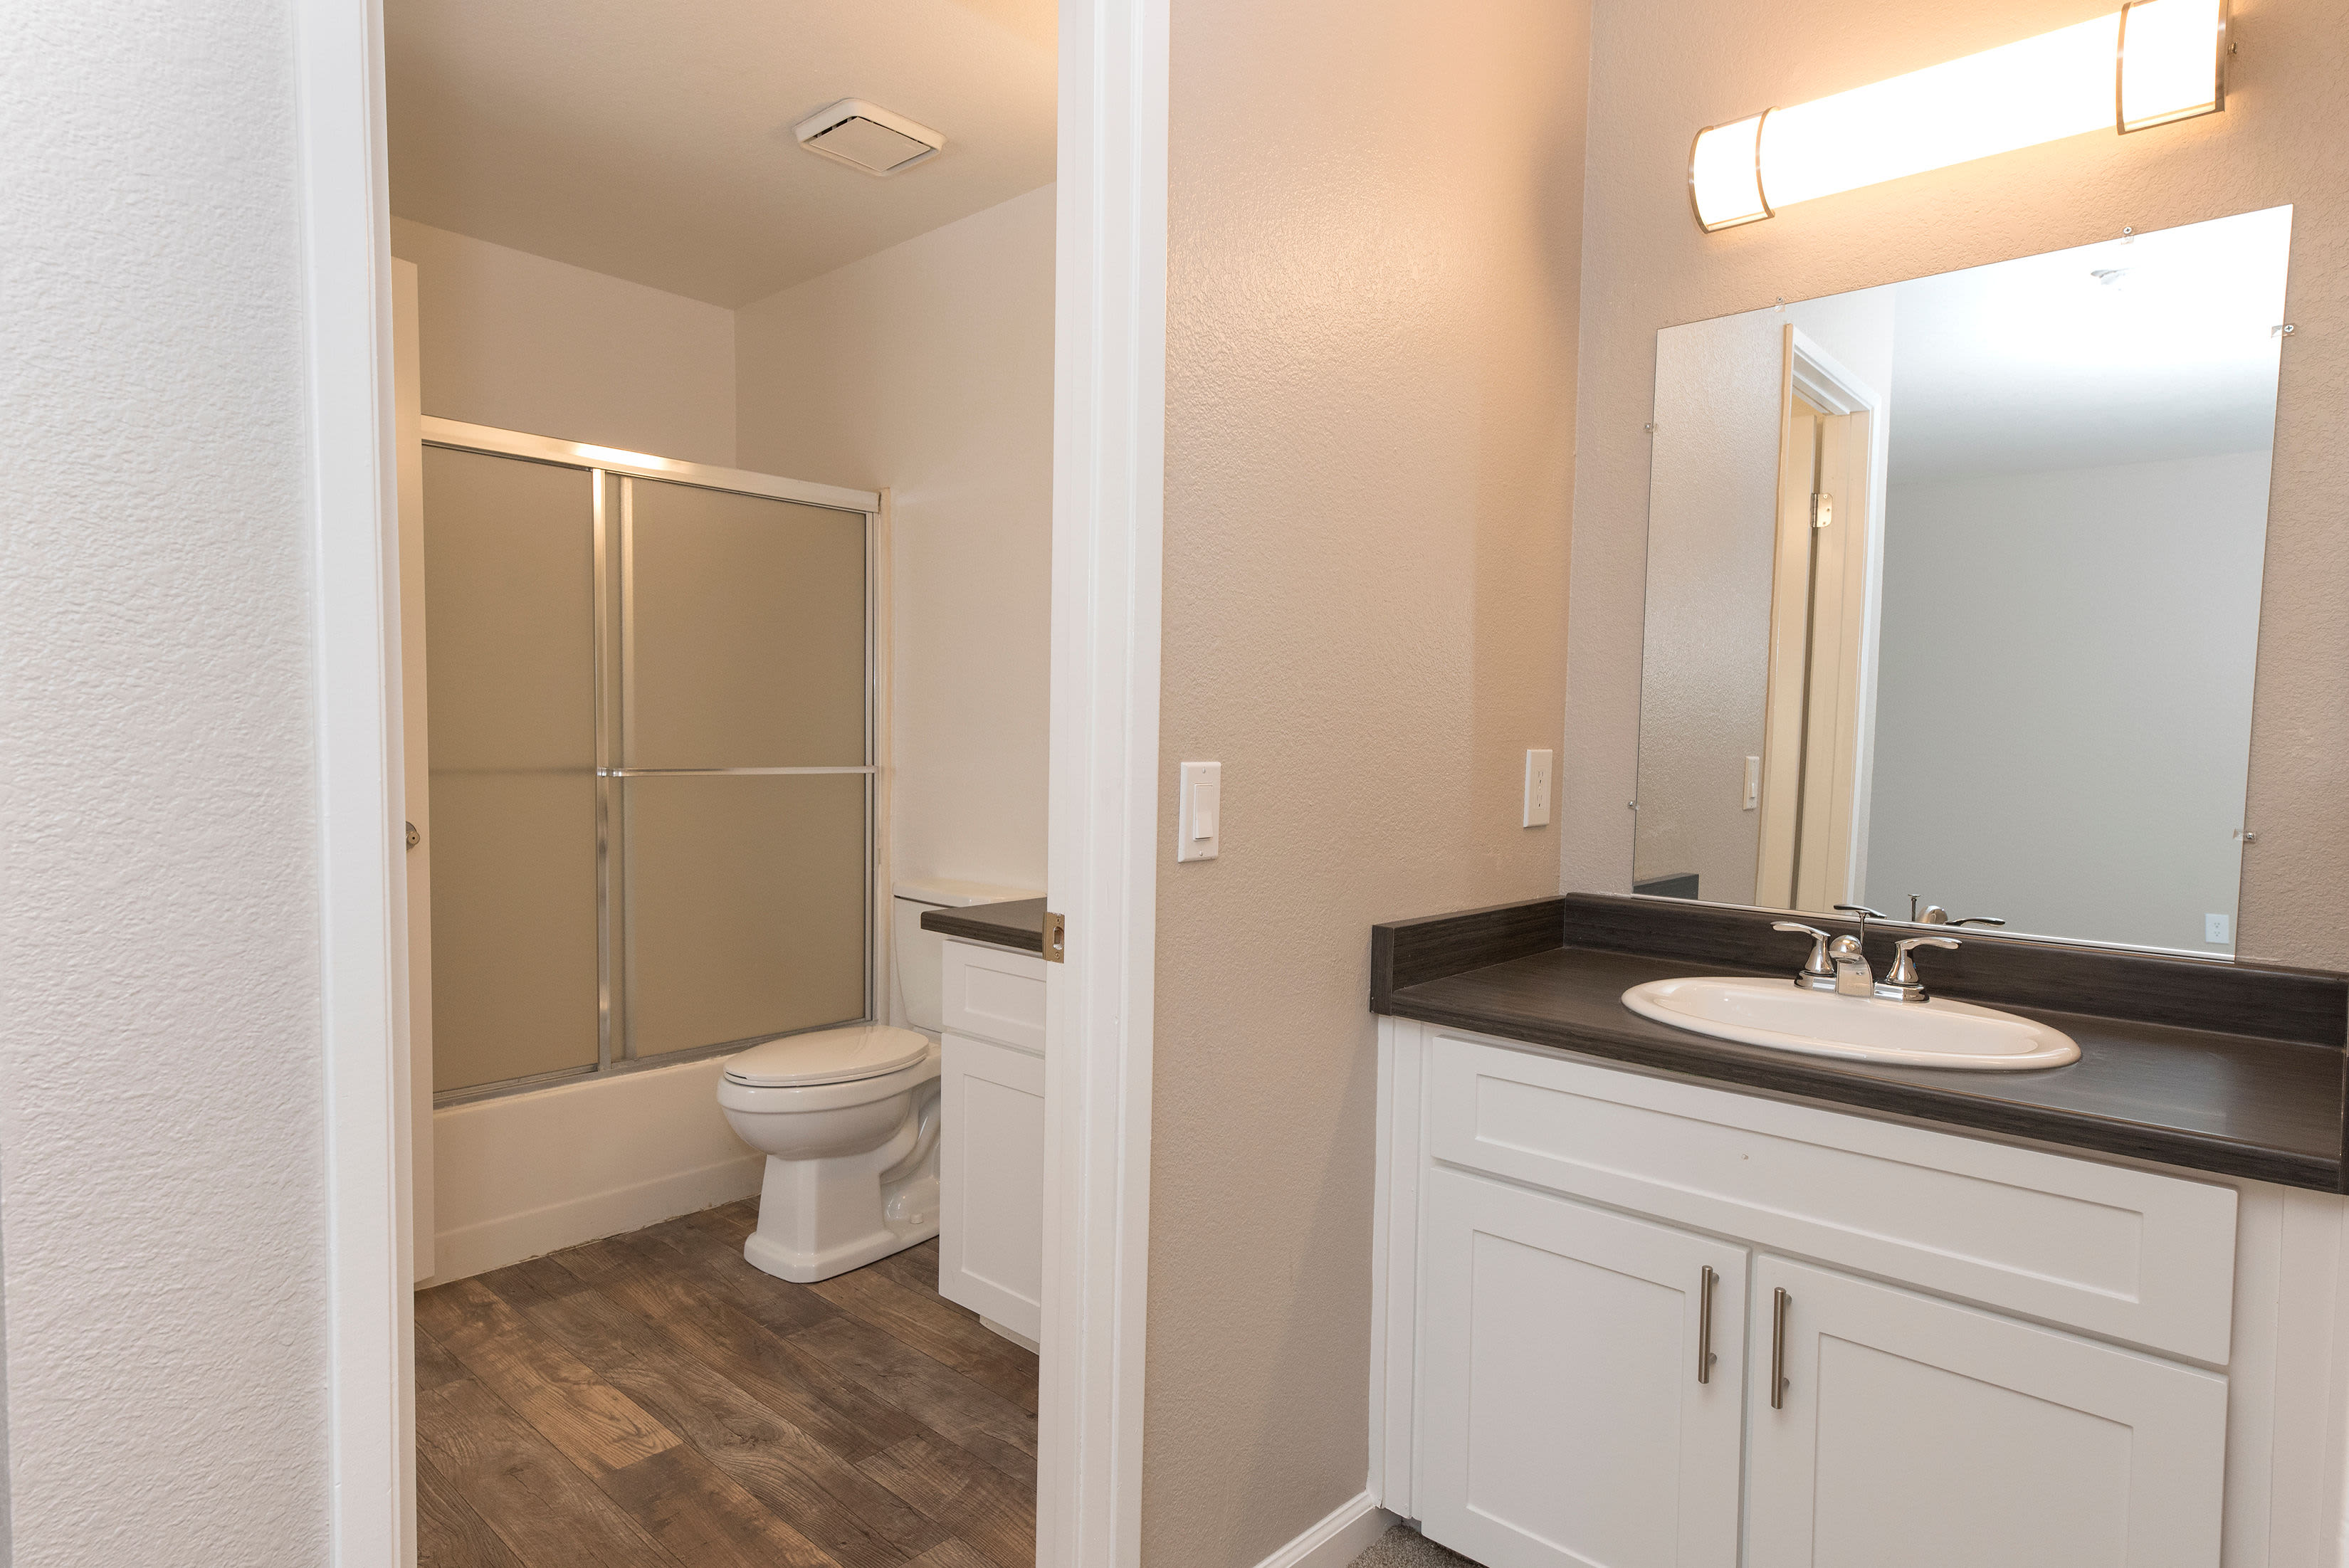 Bathroom area of Park Ridge Apartment Homes in Rohnert Park, California